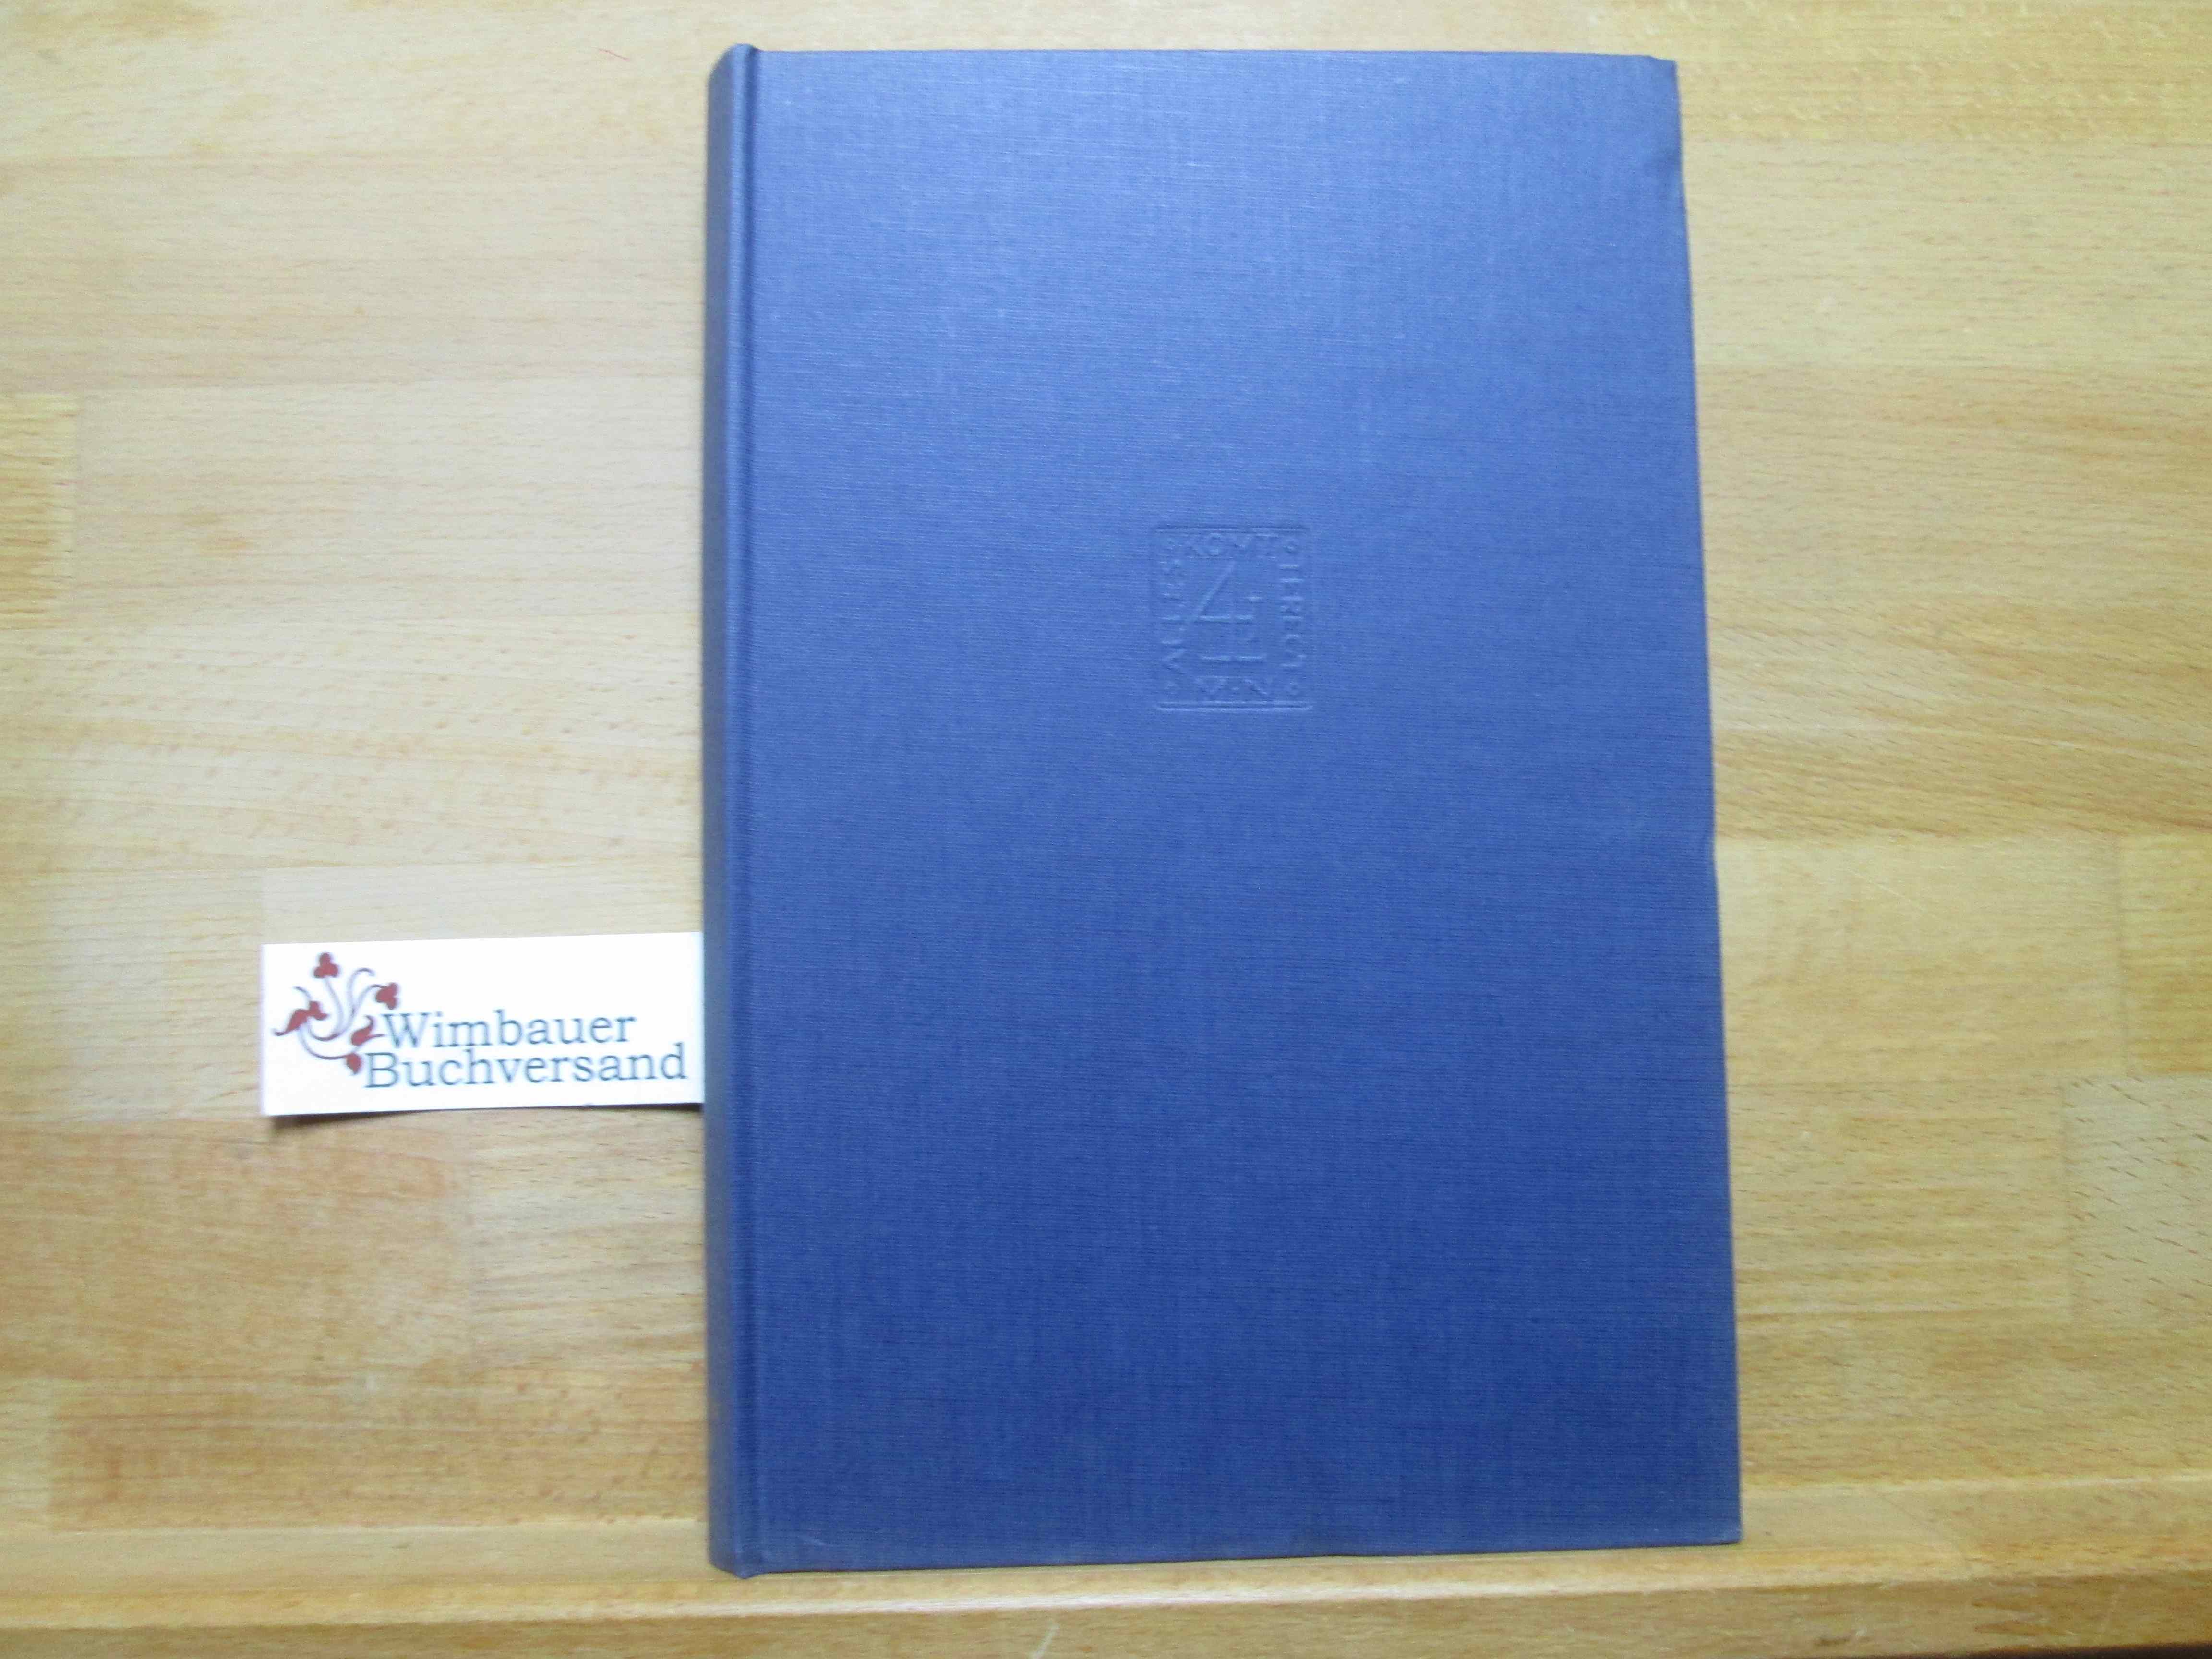 Edmund Husserl 1859-1959 : recueil commémoratif publié à l'occasion du centenaire de la naissance du philosophe. Phaenomenologica ; 4 - Husserl, Edmund